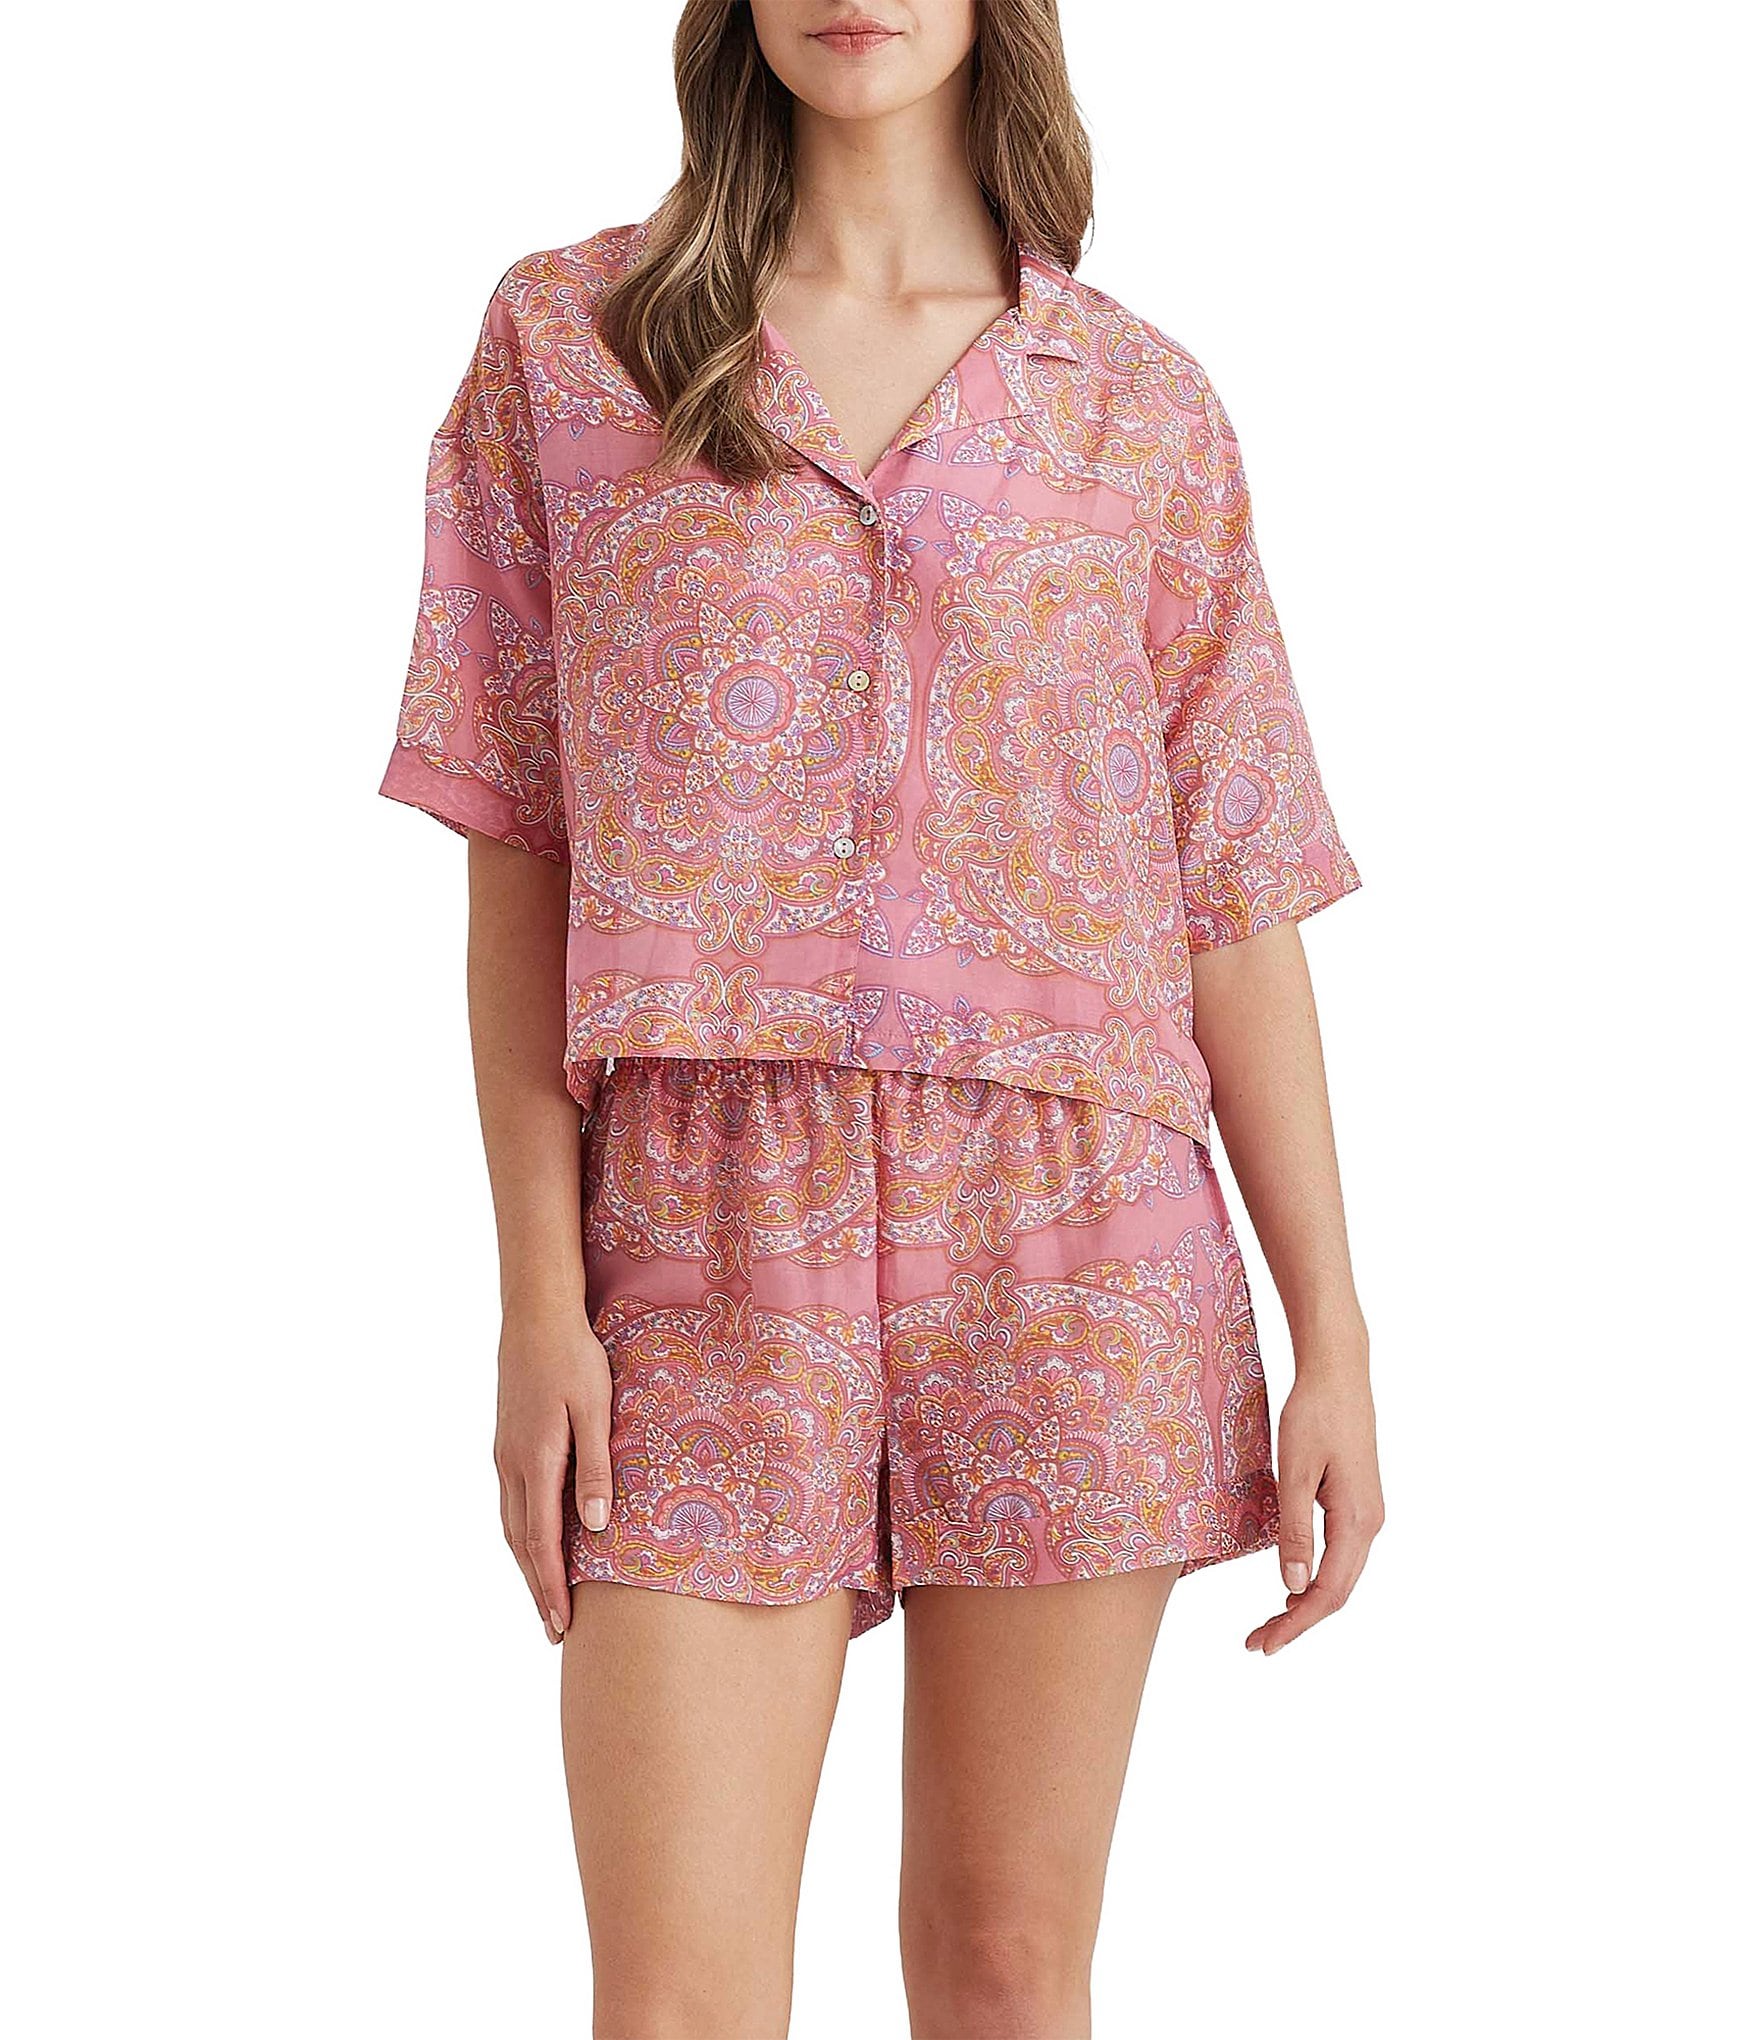 Floral Print Beautifully Soft Notch Collar Pajama Set